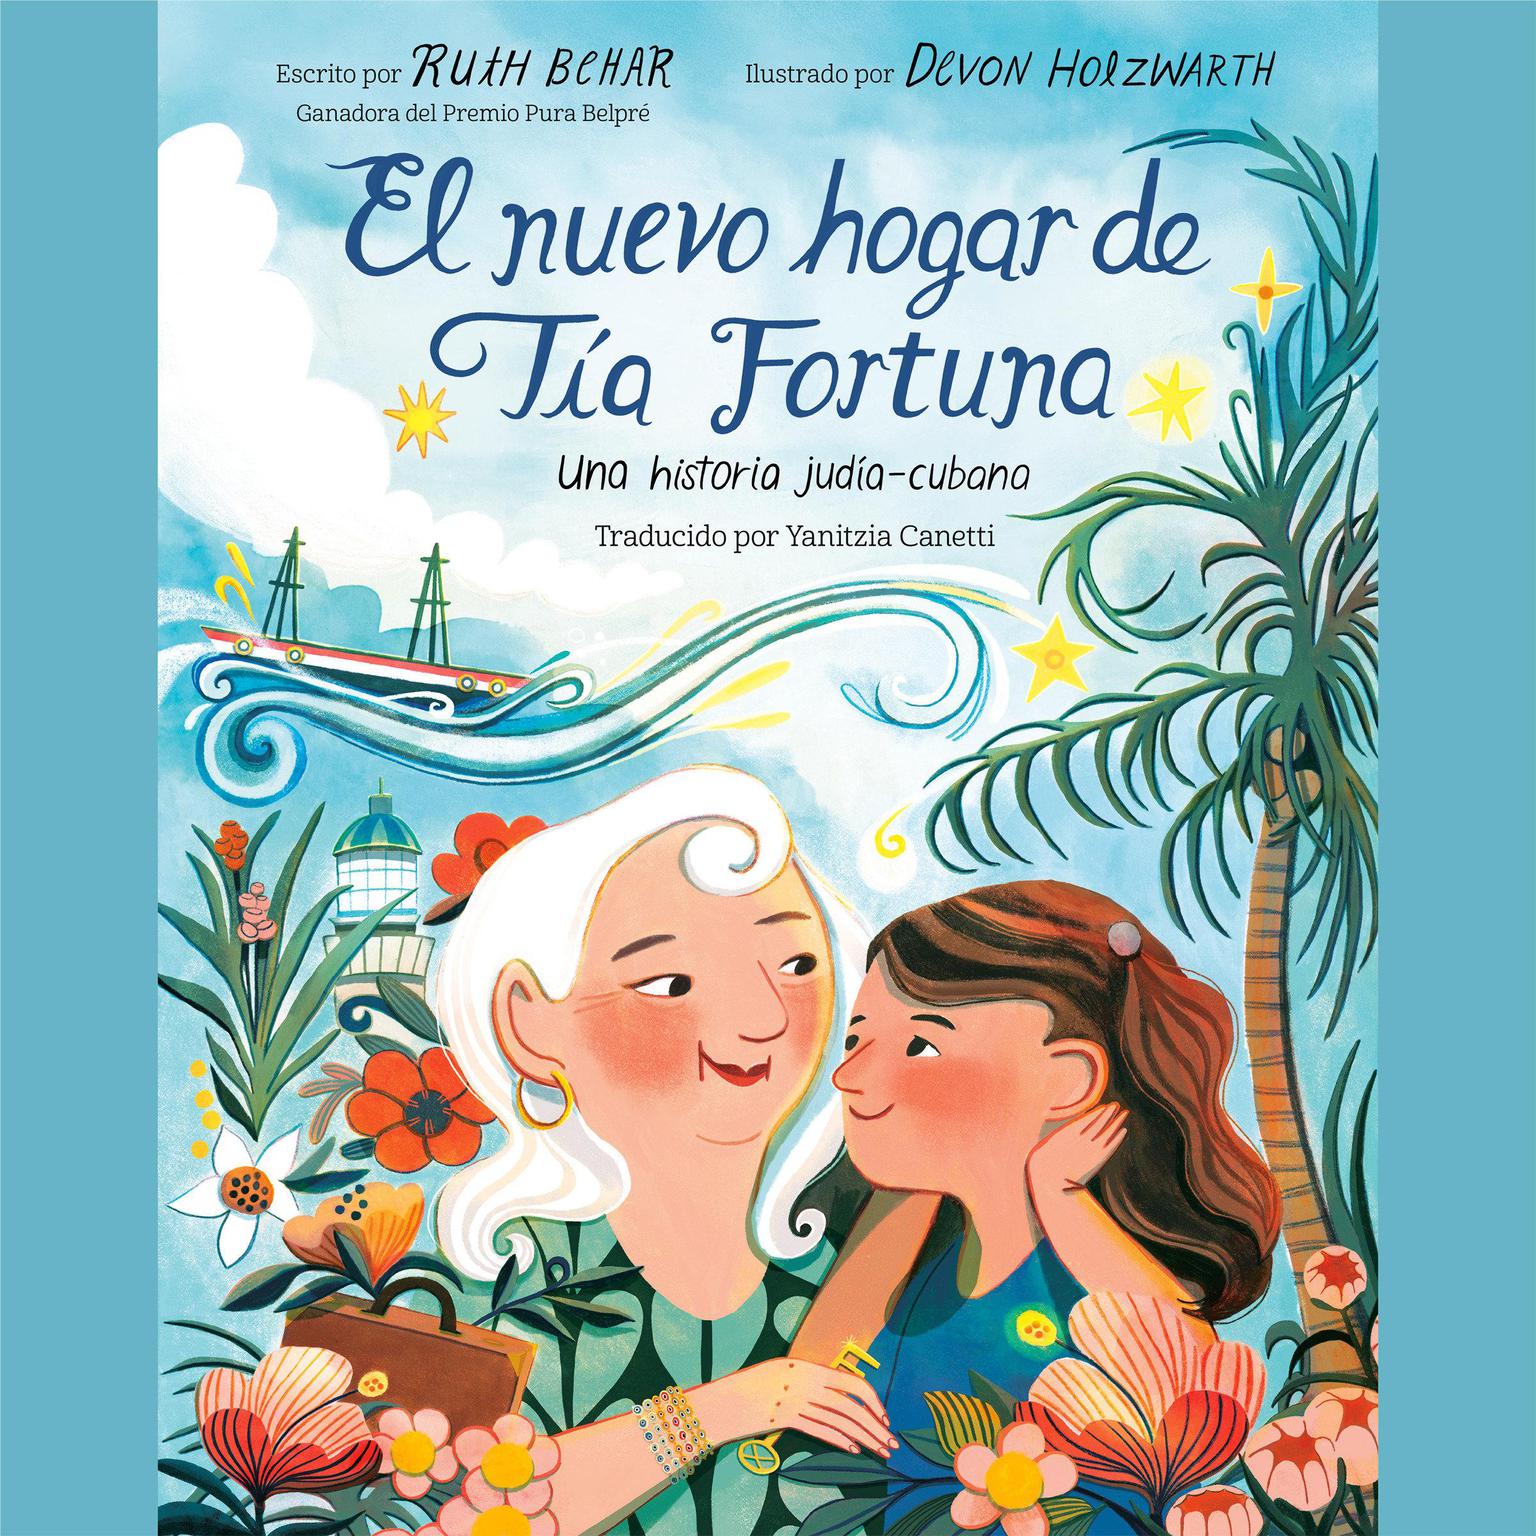 El nuevo hogar de Tía Fortuna: Una historia judía-cubana Audiobook, by Ruth Behar